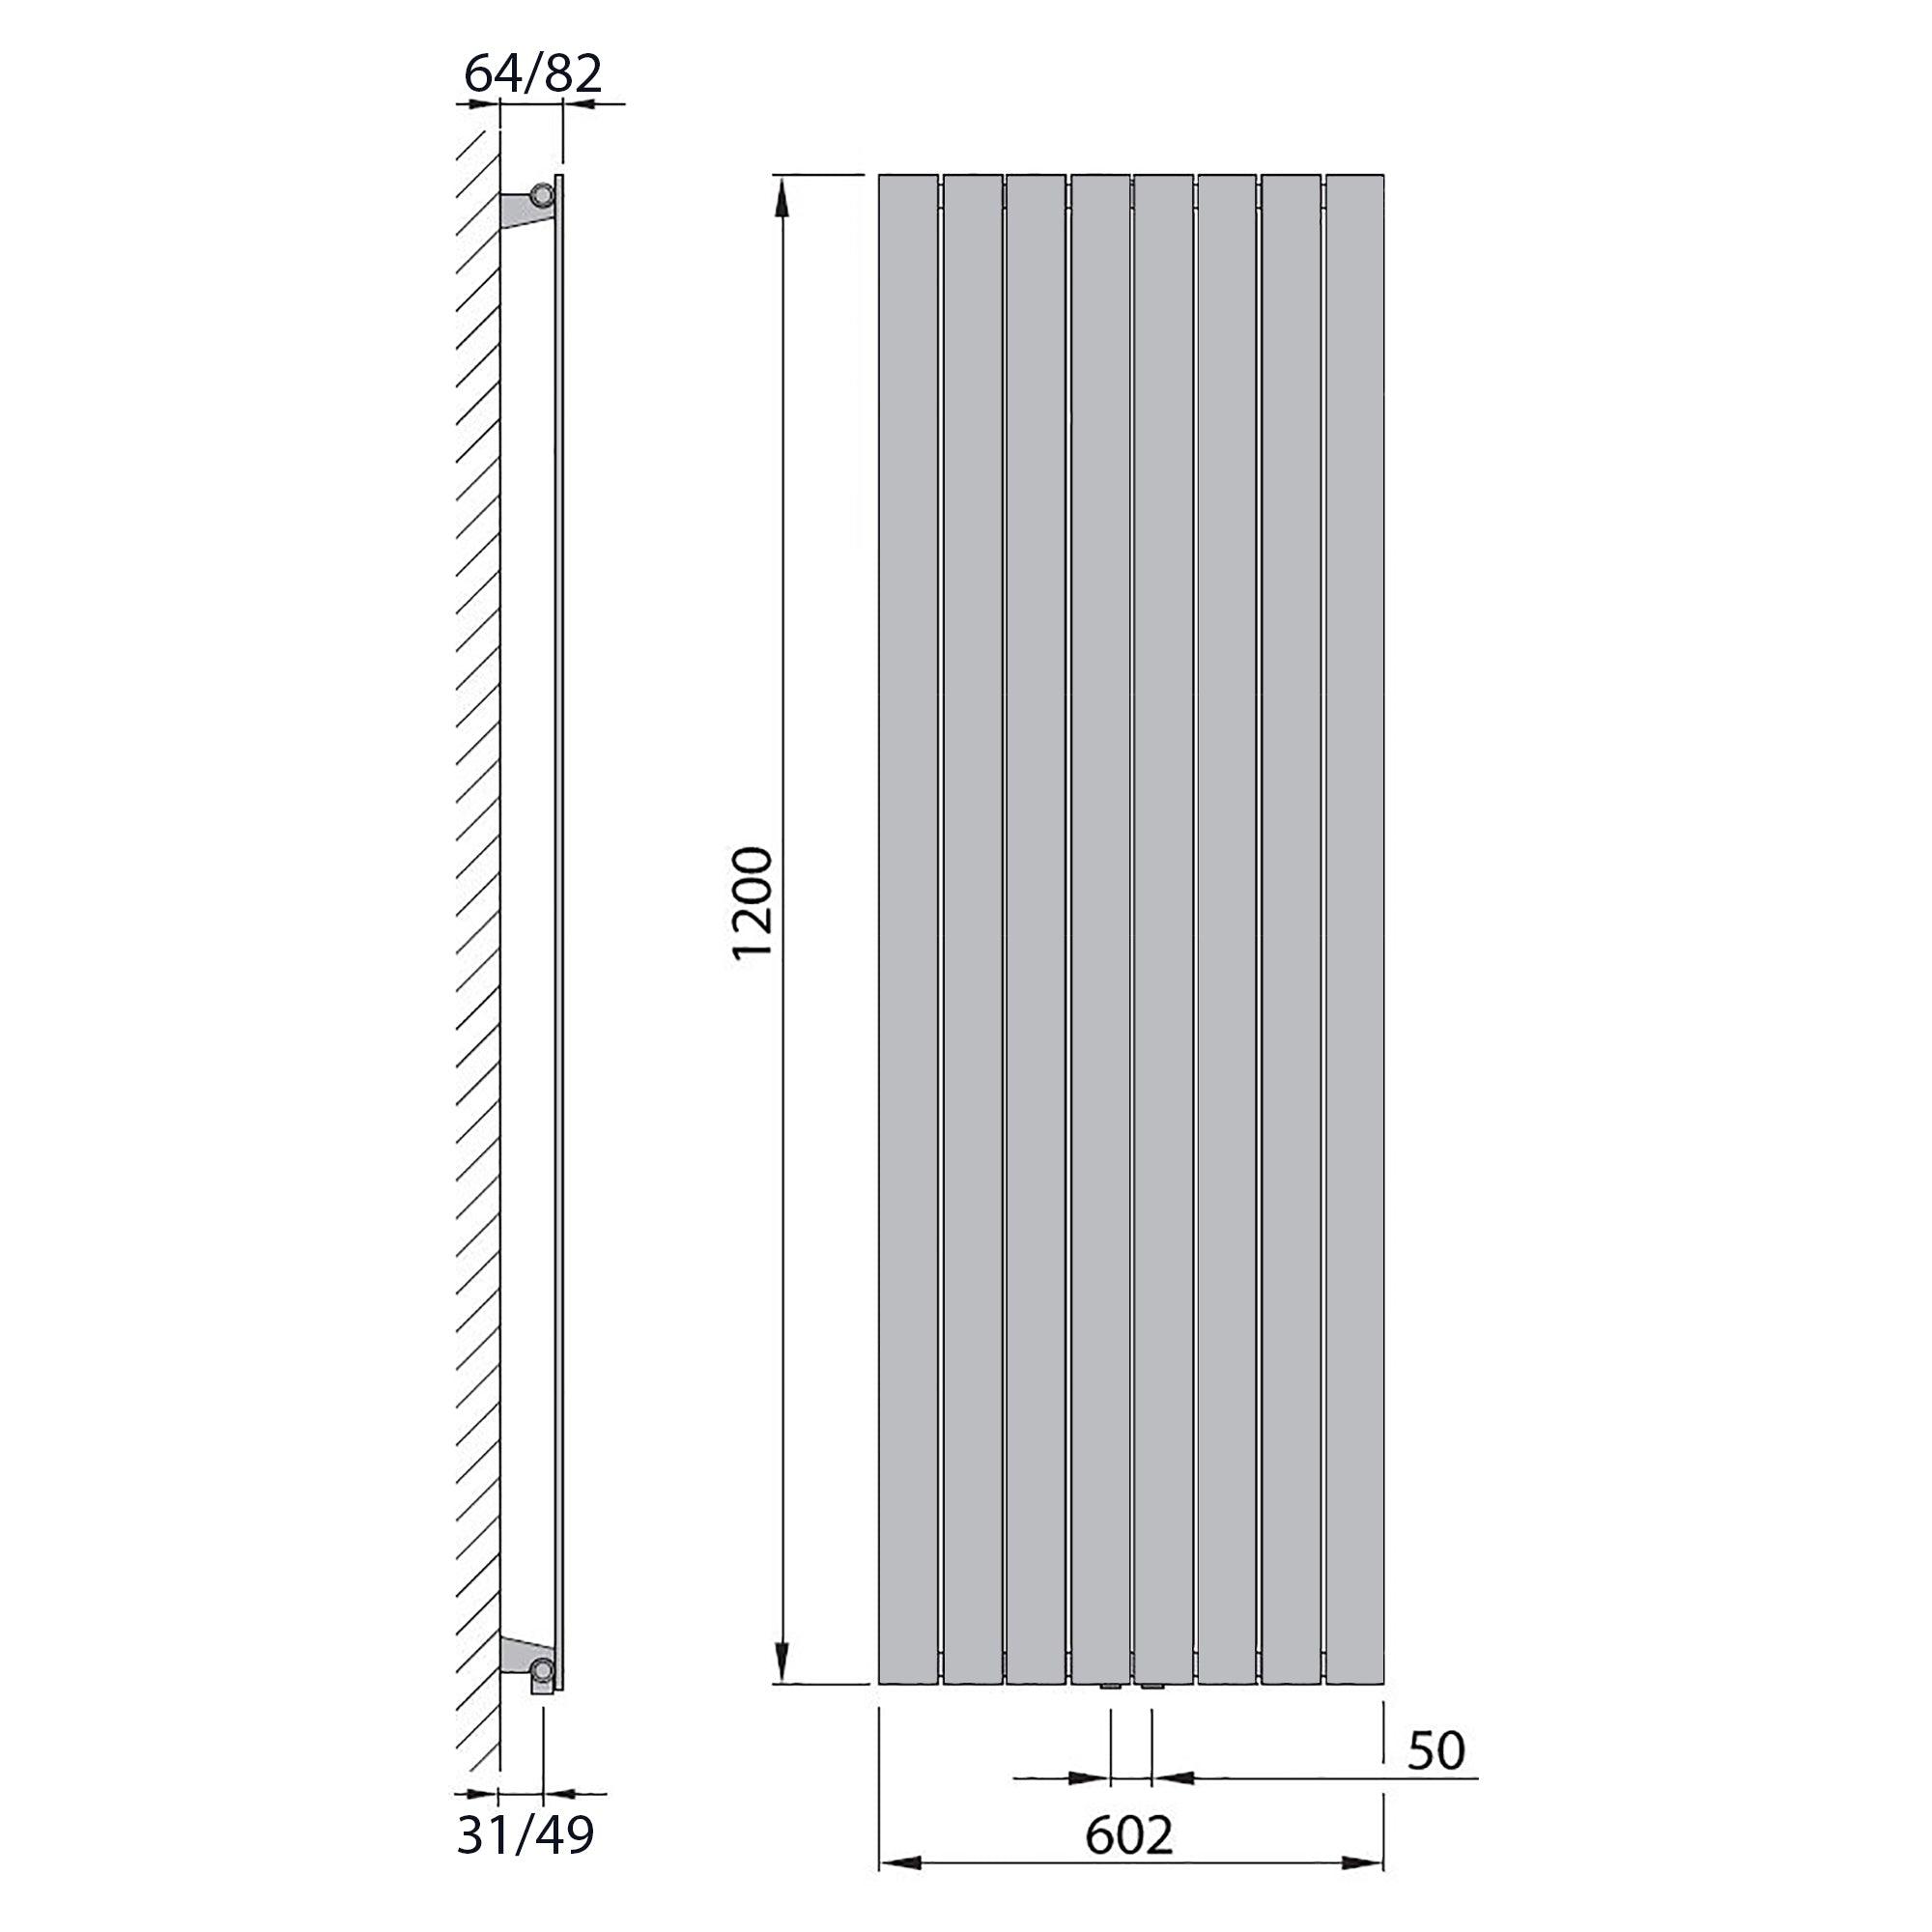 Design Paneelheizkörper vertikal 1200 x 602 weiß Heizkörper Badheizkörper flach Badezimmer Heizung technische Zeichnung - heizkoerper.shop